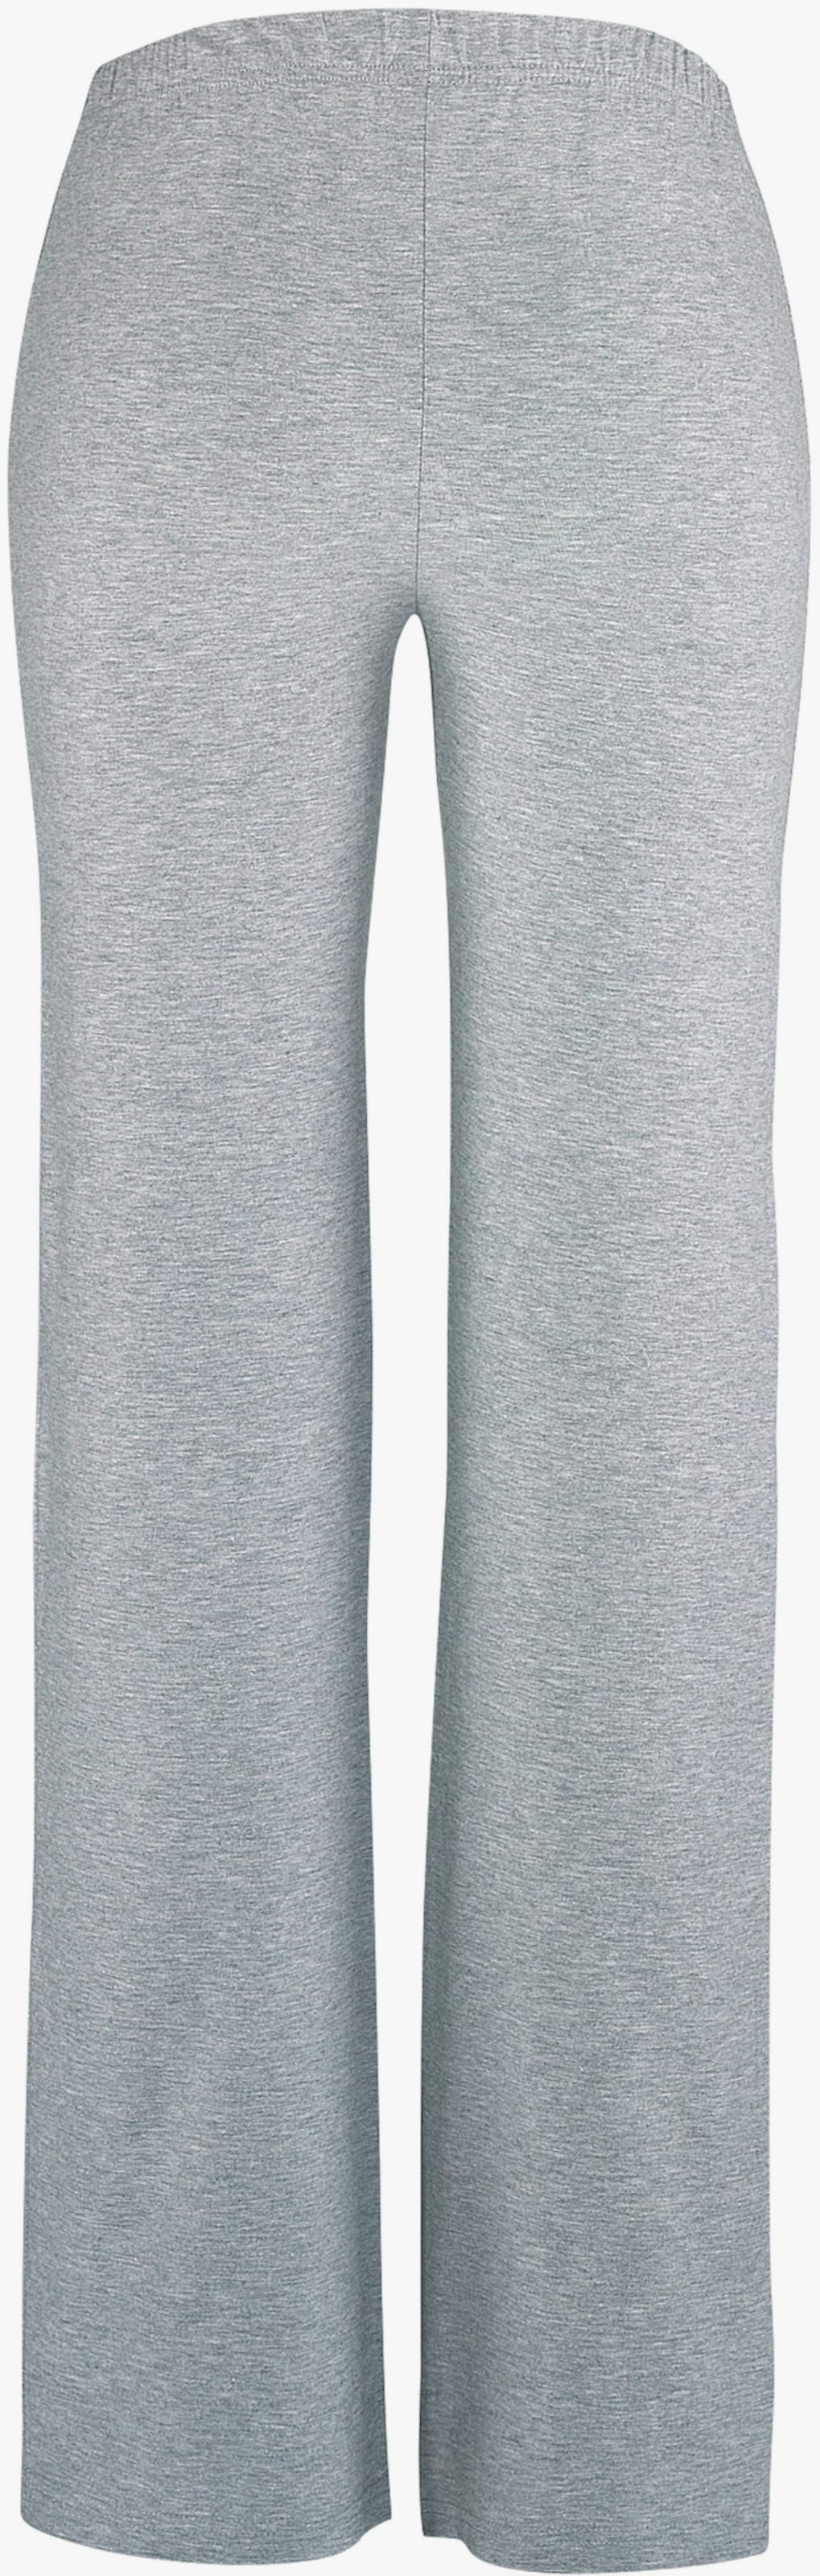 Panty - 1x gris clair chiné, 1x noir